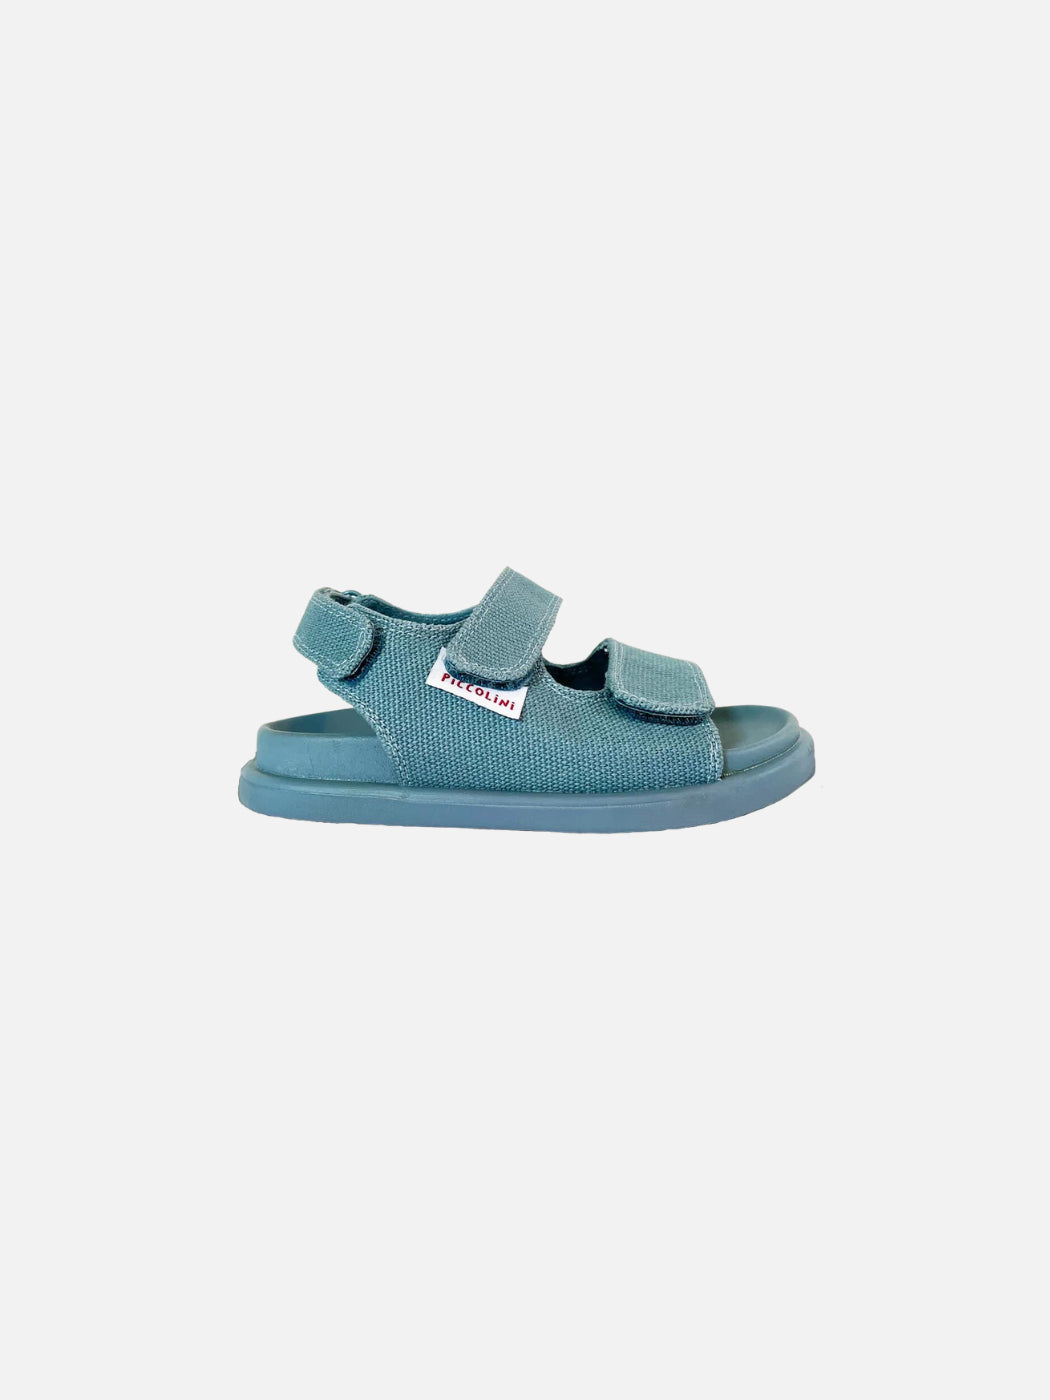 Blue cotton sandals for kids